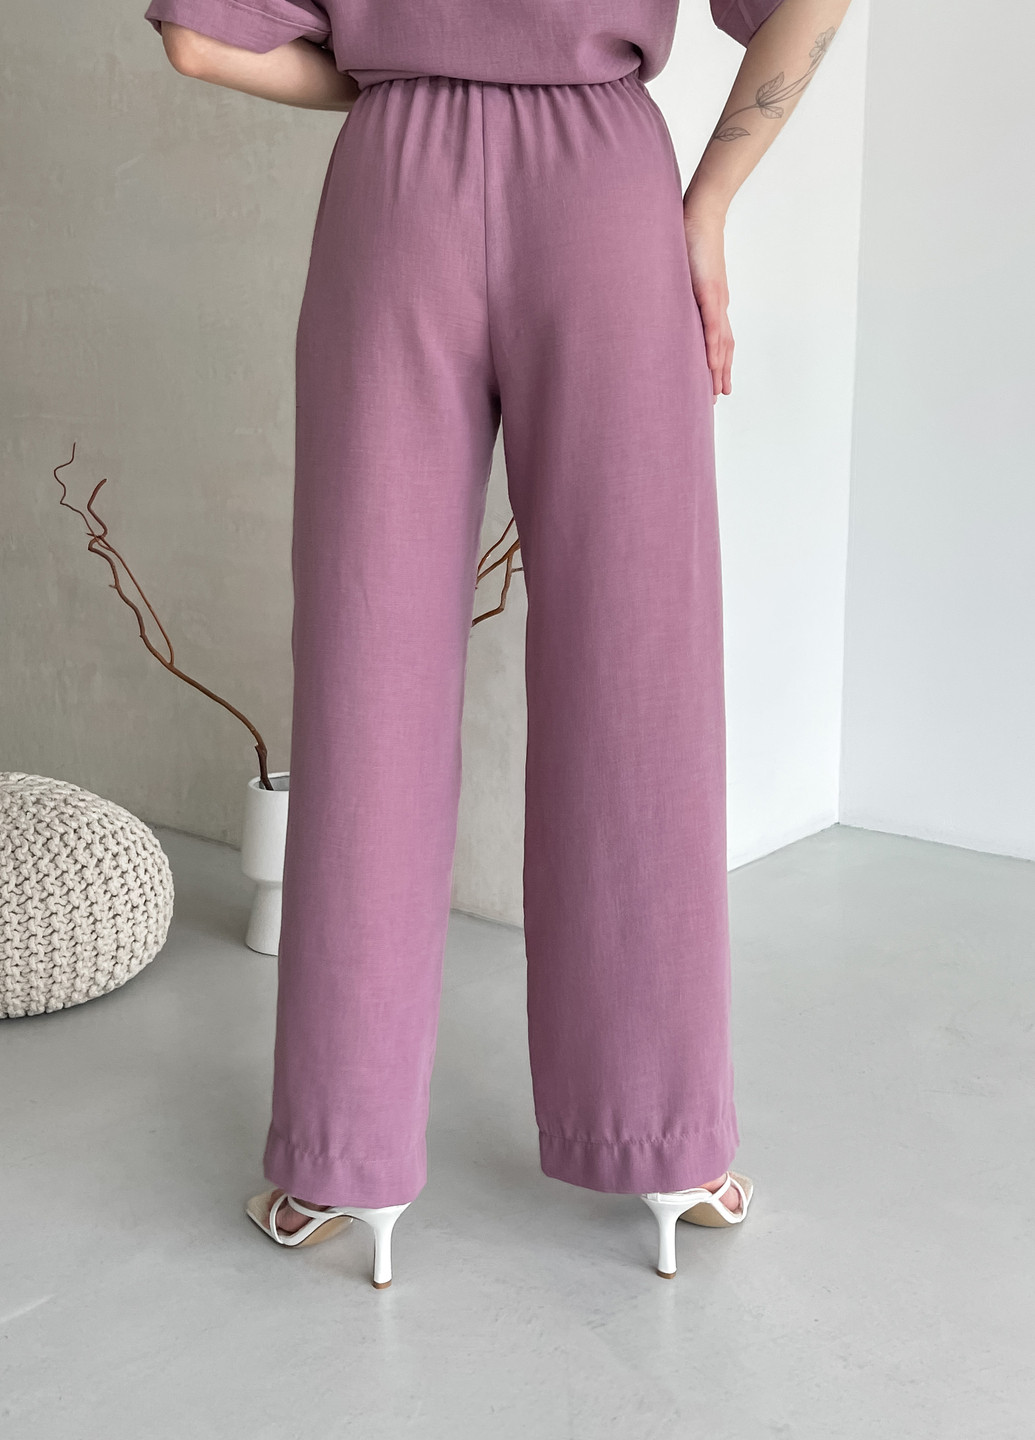 Жіночі штани кльош від стегна з льону рожеві Палуца 600000144 Merlini палуцца (258280321)